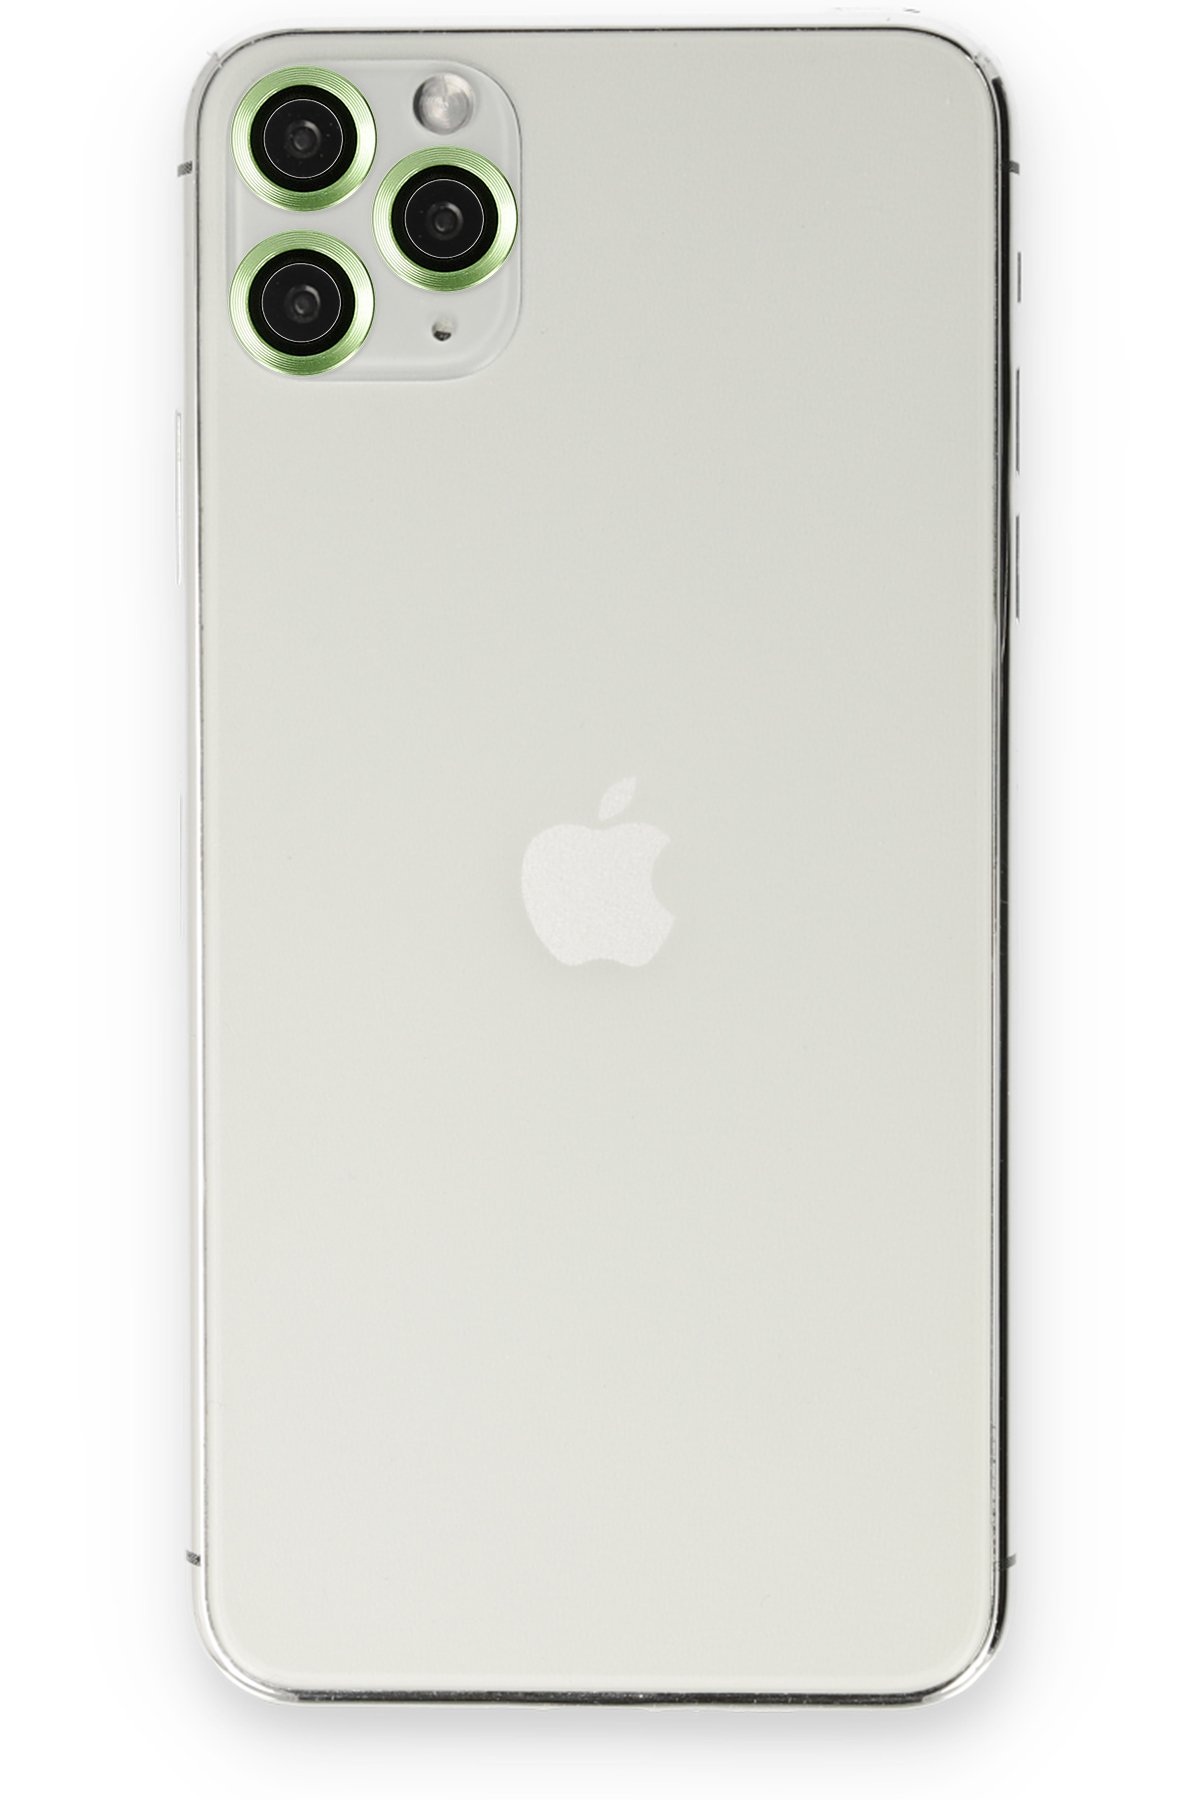 Newface iPhone 11 Pro Kılıf Lansman Legant Silikon - Kırmızı